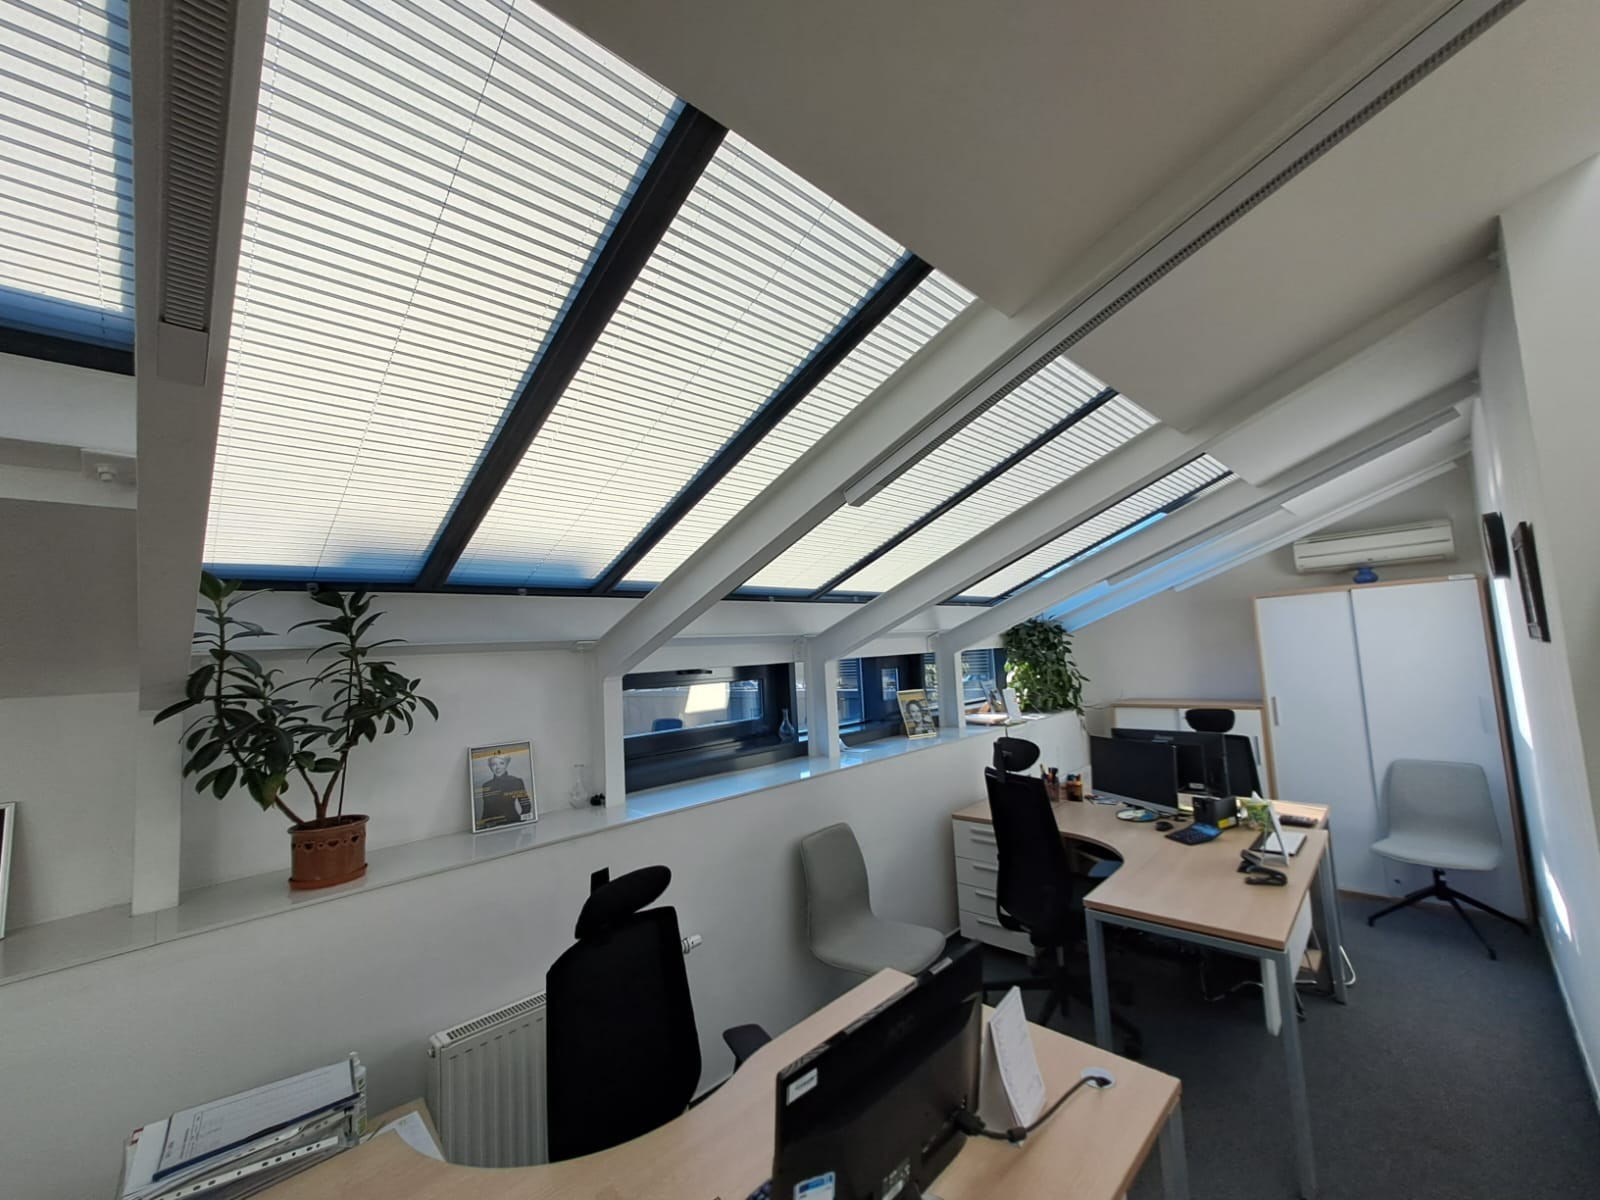 Zdjęcie ukazuje nowoczesne plisy dachowe zainstalowane w oknie połaciowym łódzkiego mieszkania. Te stylowe osłony okienne nie tylko estetycznie komponują się z wnętrzem, ale również zapewniają doskonałą ochronę przed nadmiernym nasłonecznieniem, zwiększając komfort użytkowania pomieszczenia.